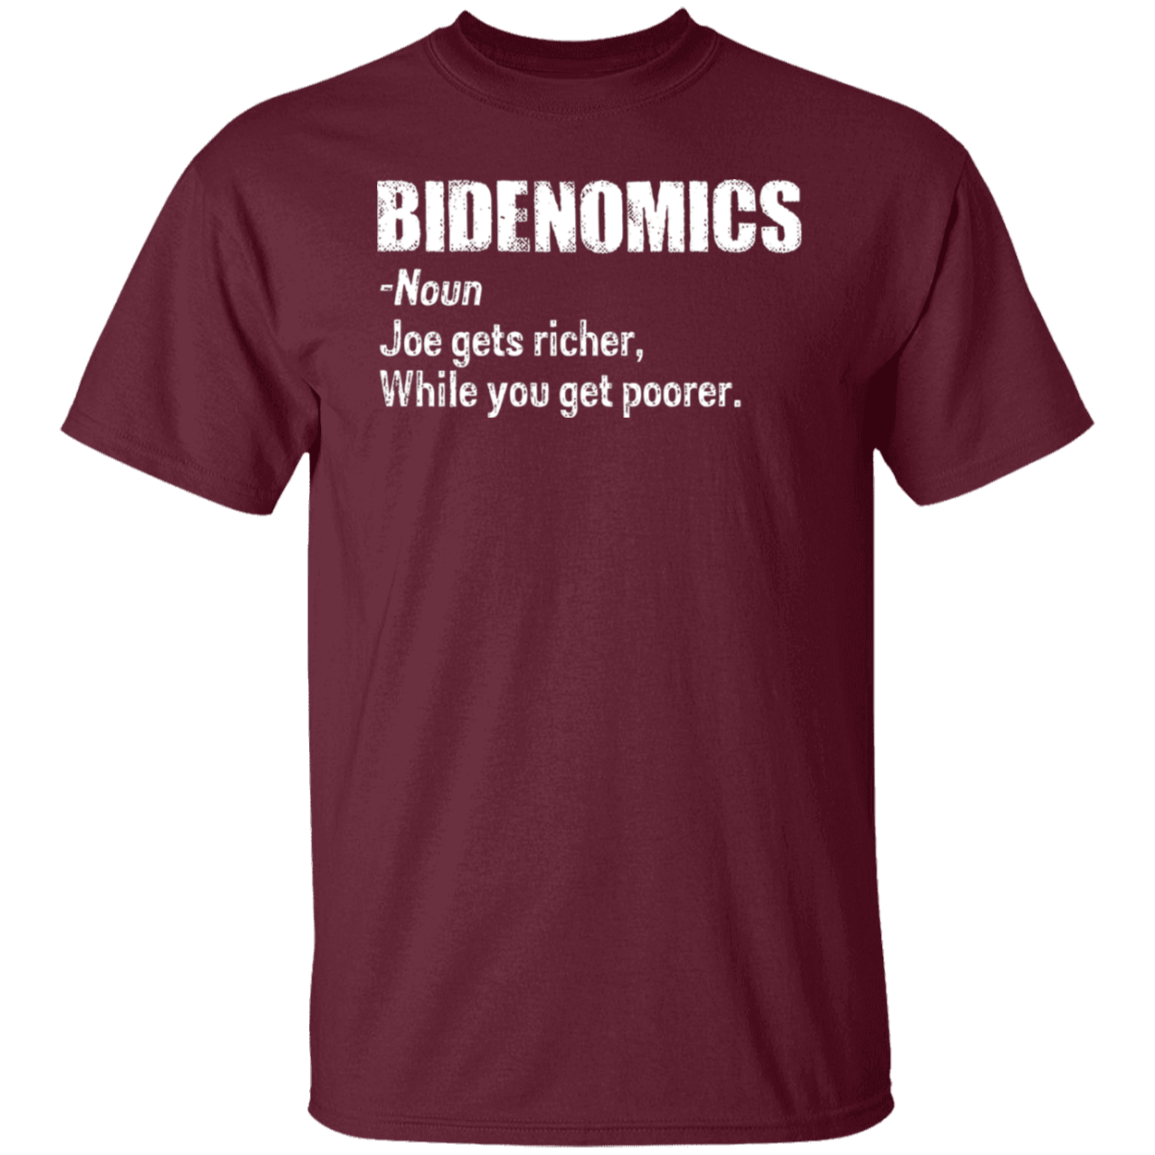 Bidenomics